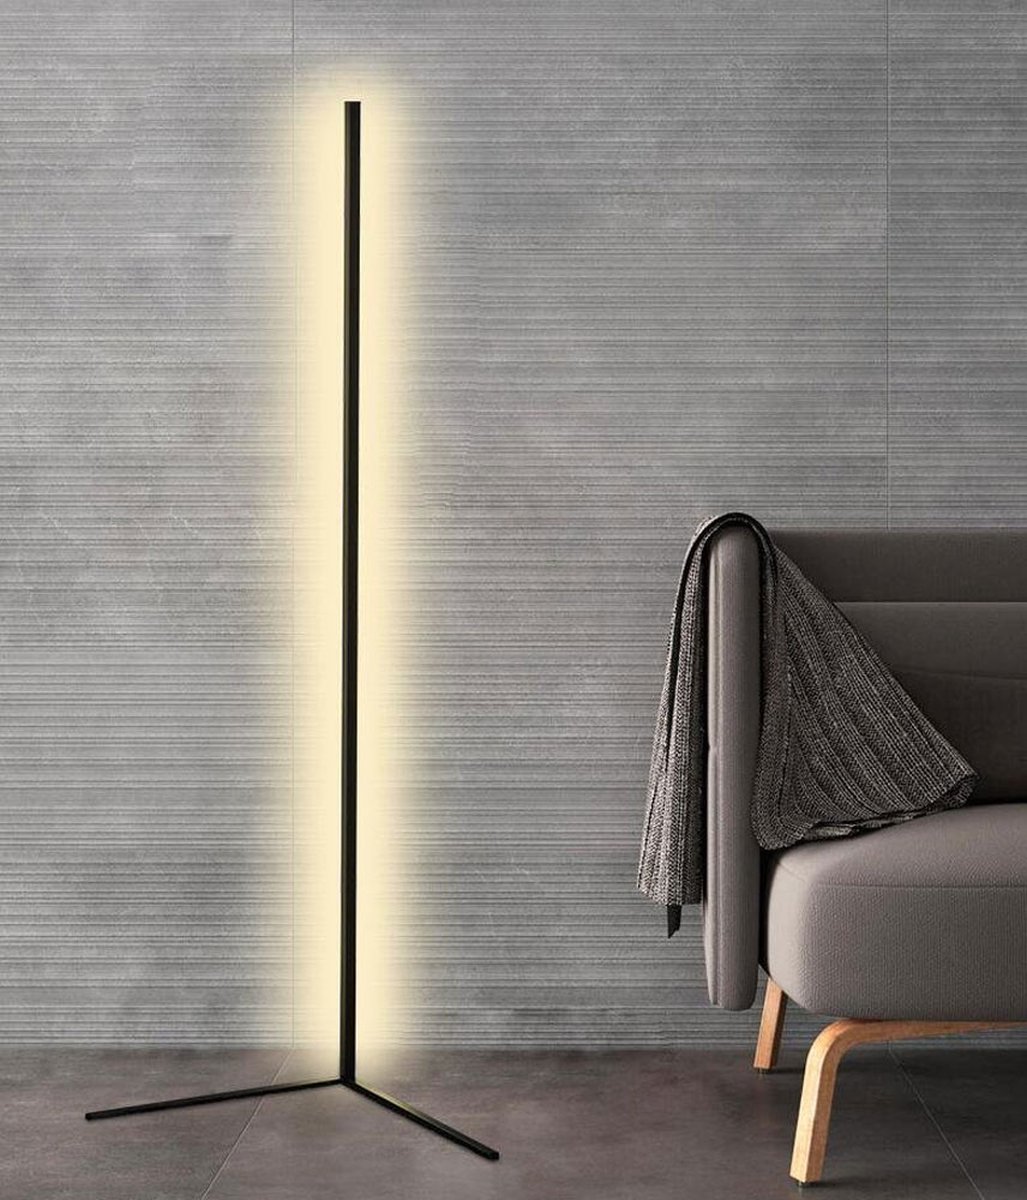 MELILI Moderne LED Vloerlamp-Hoeklampk-floor lamp-Staande Lamp-warm wit 4000k-Steerverlichting-LED woonkamer licht